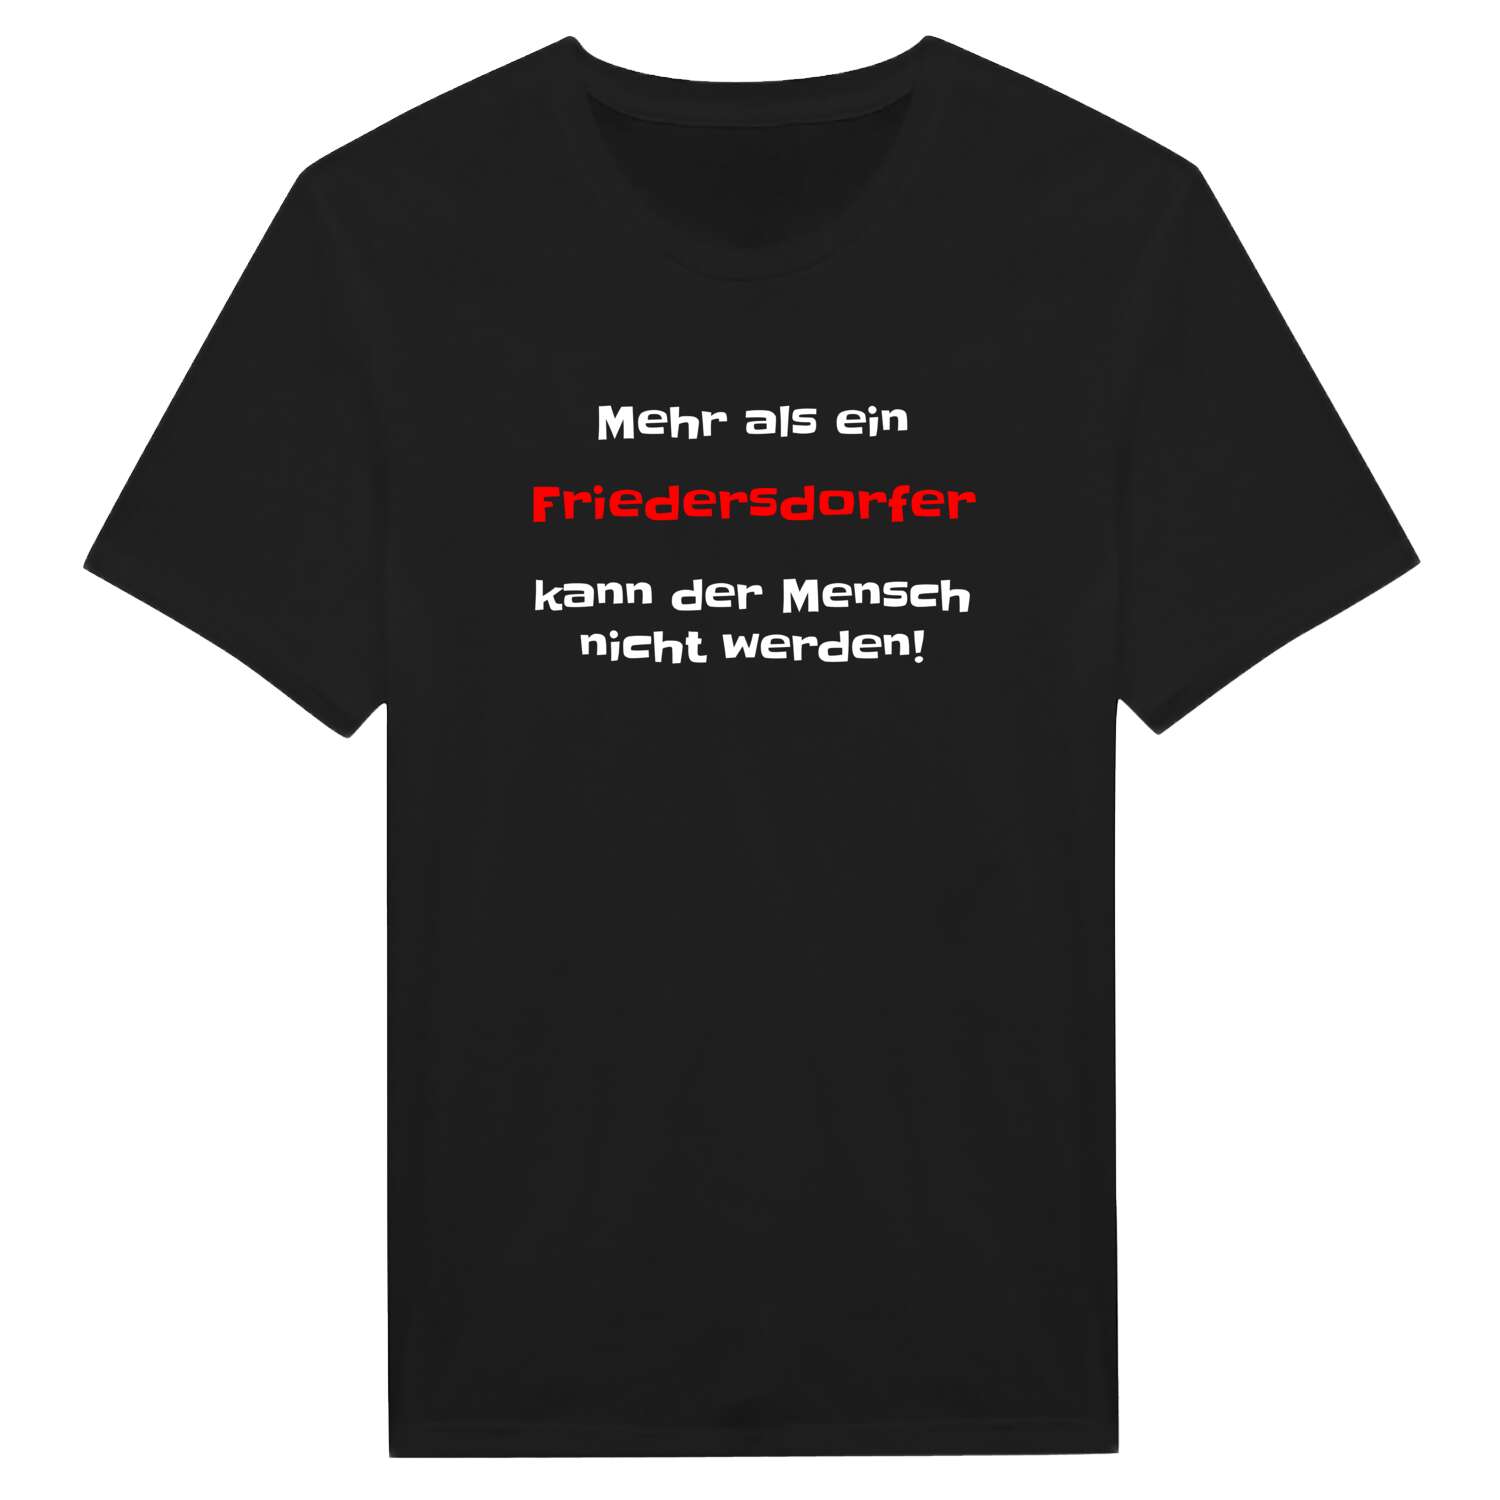 Friedersdorf T-Shirt »Mehr als ein«